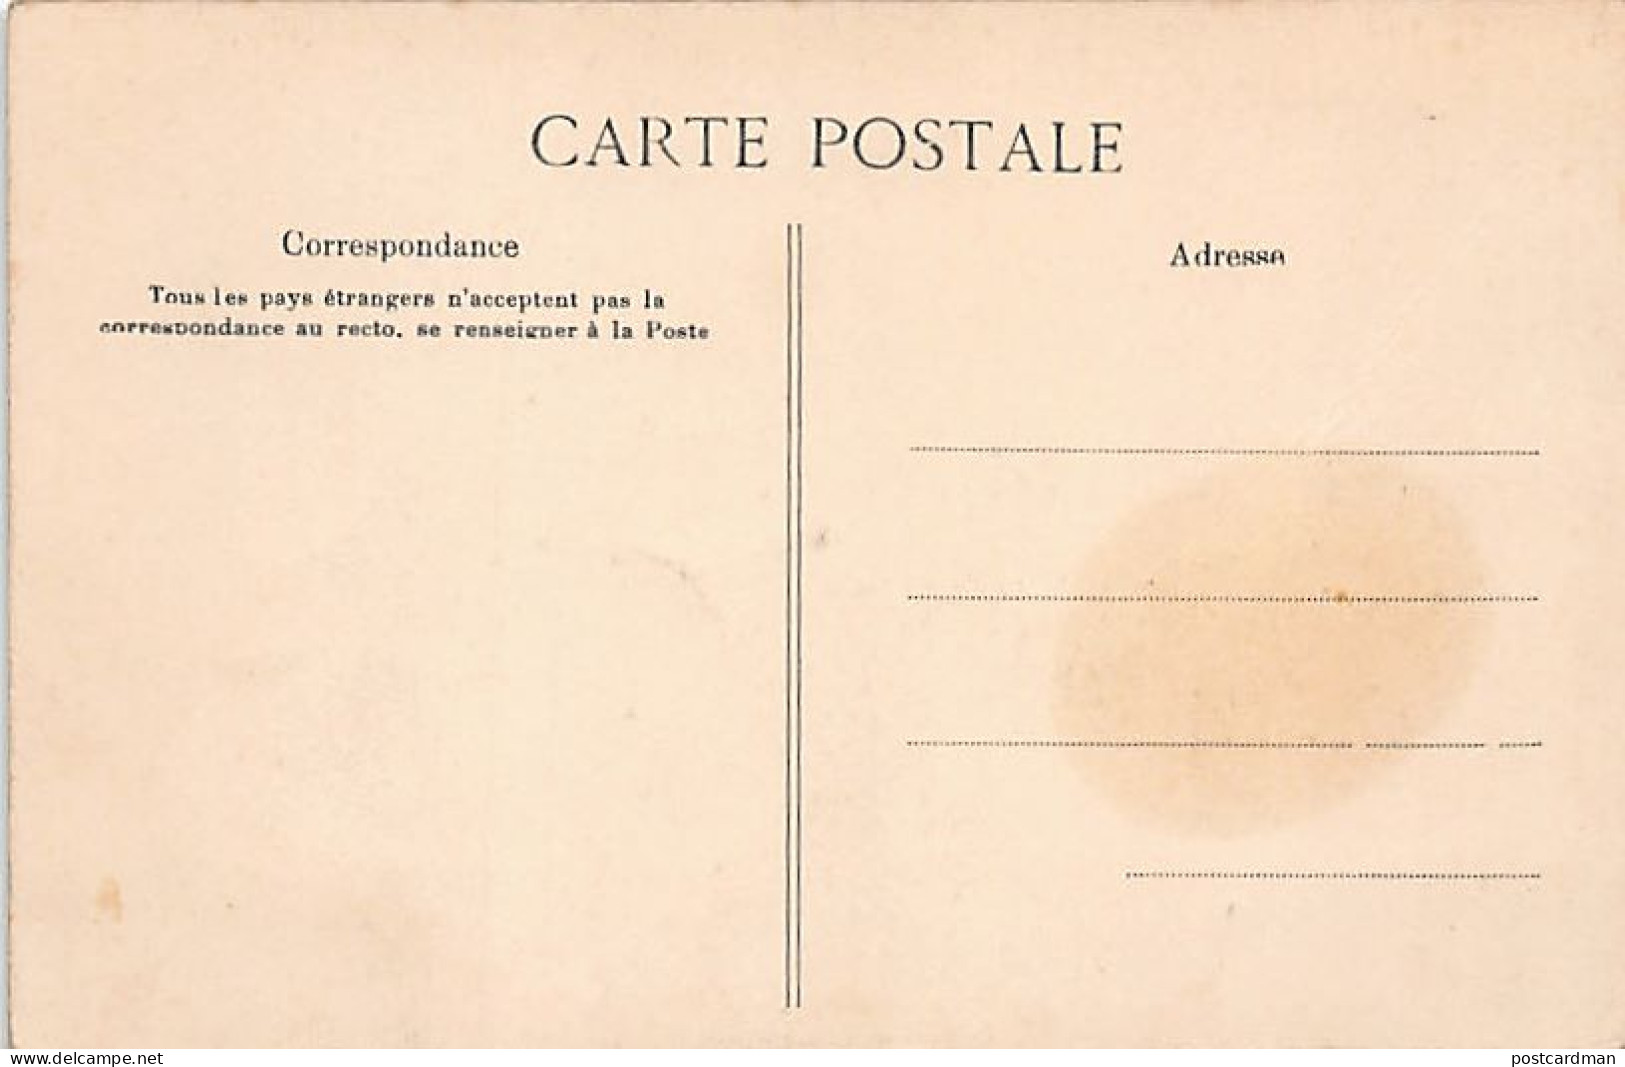 Algérie - Mauresques Prenant Le Café - Ed. Collection Idéale P.S. 161 - Frauen